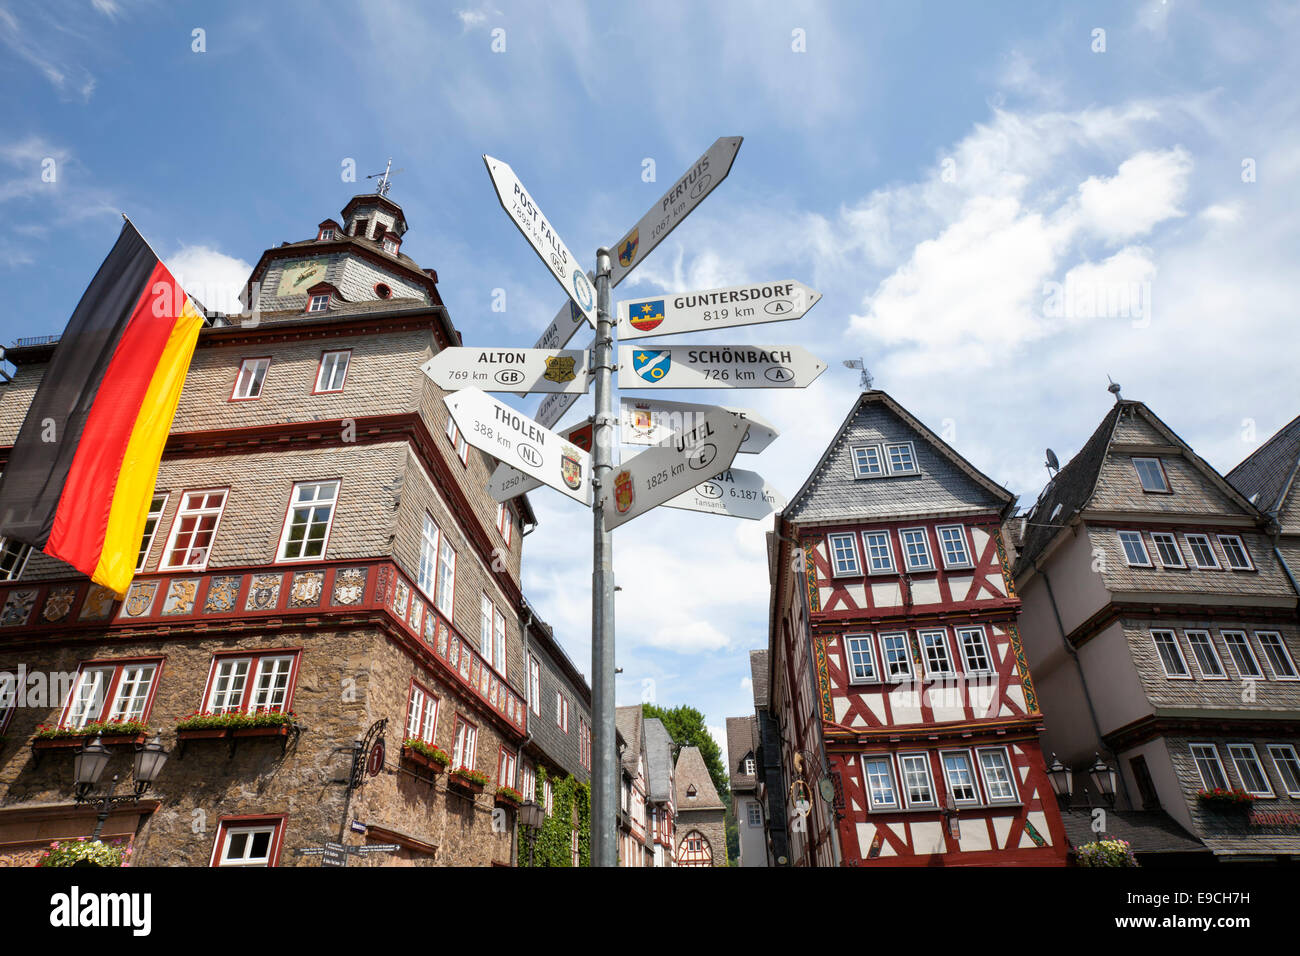 L'hôtel de ville, marché du beurre, Buttermarkt Signpost, villes partenaires, vieille ville historique de Herborn, Hesse, Germany, Europe, Banque D'Images